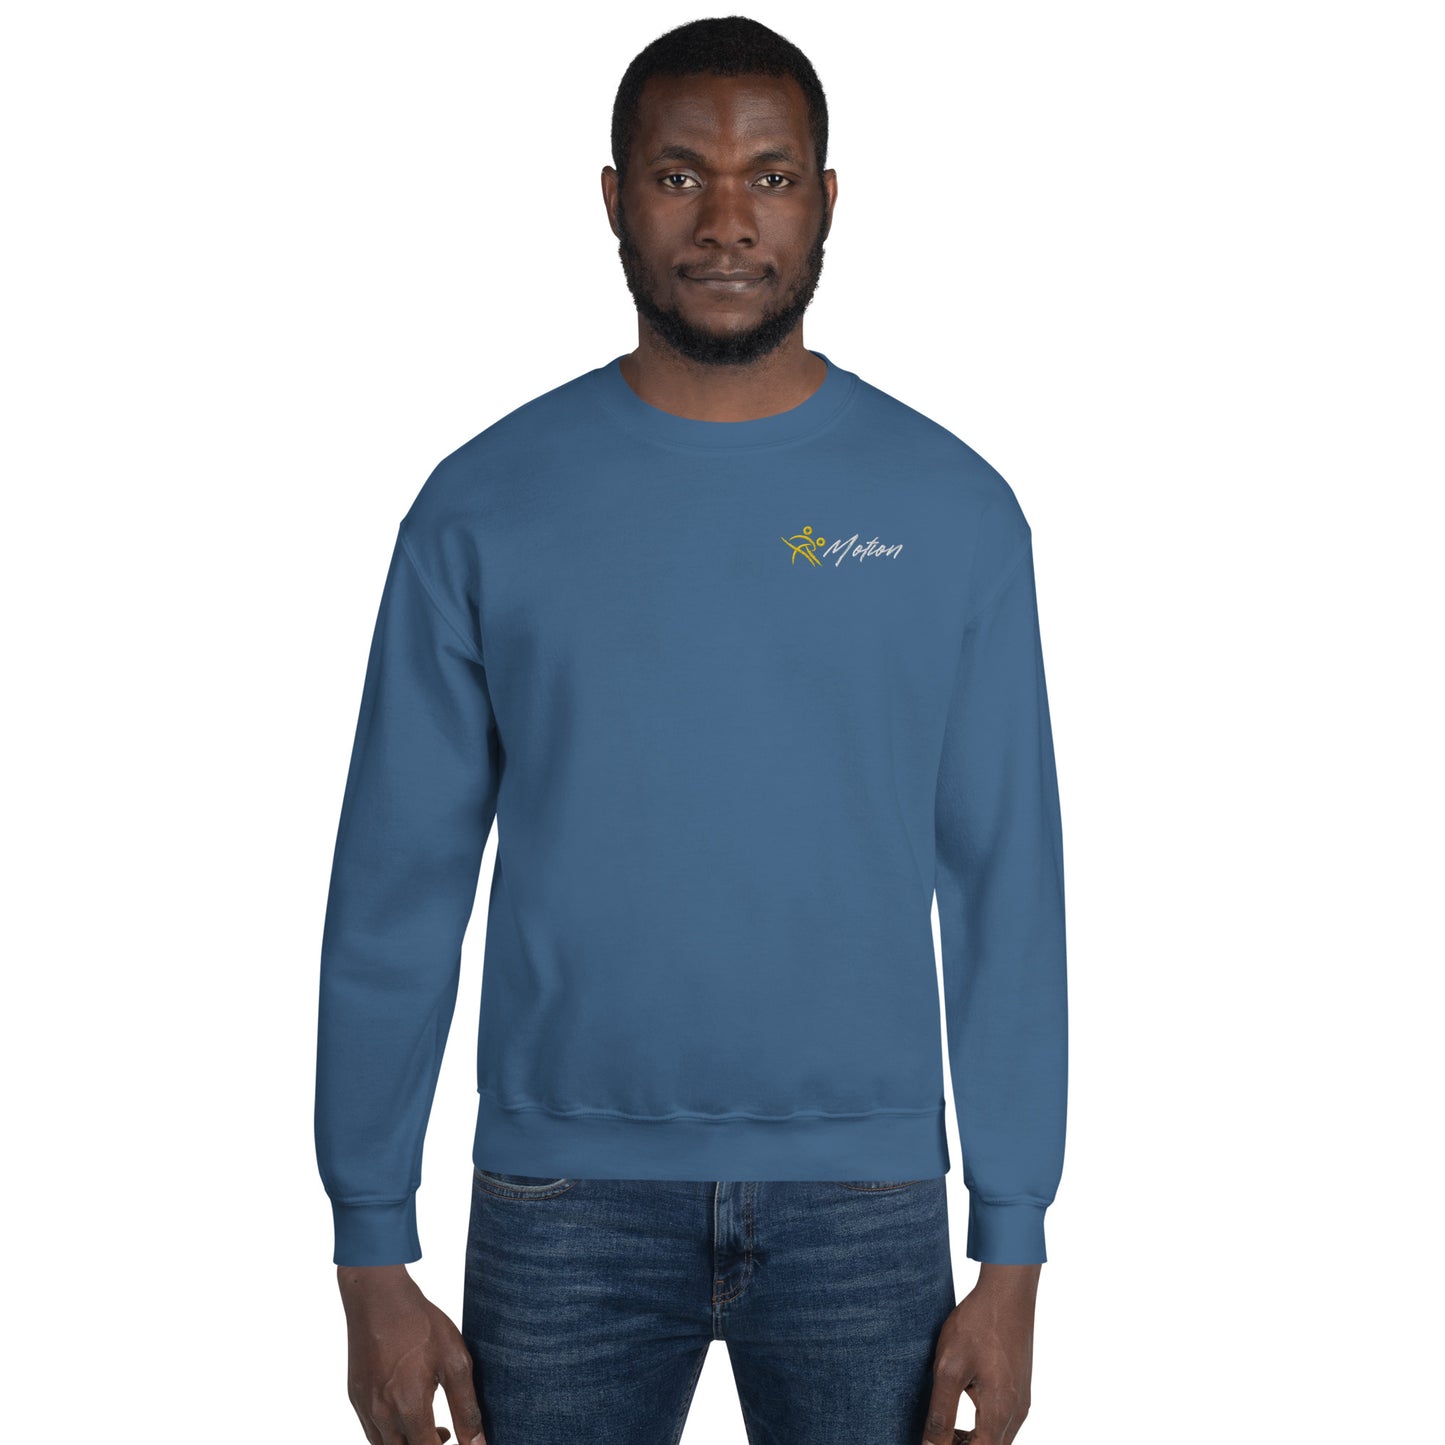 IV Motion Unisex Sweatshirt